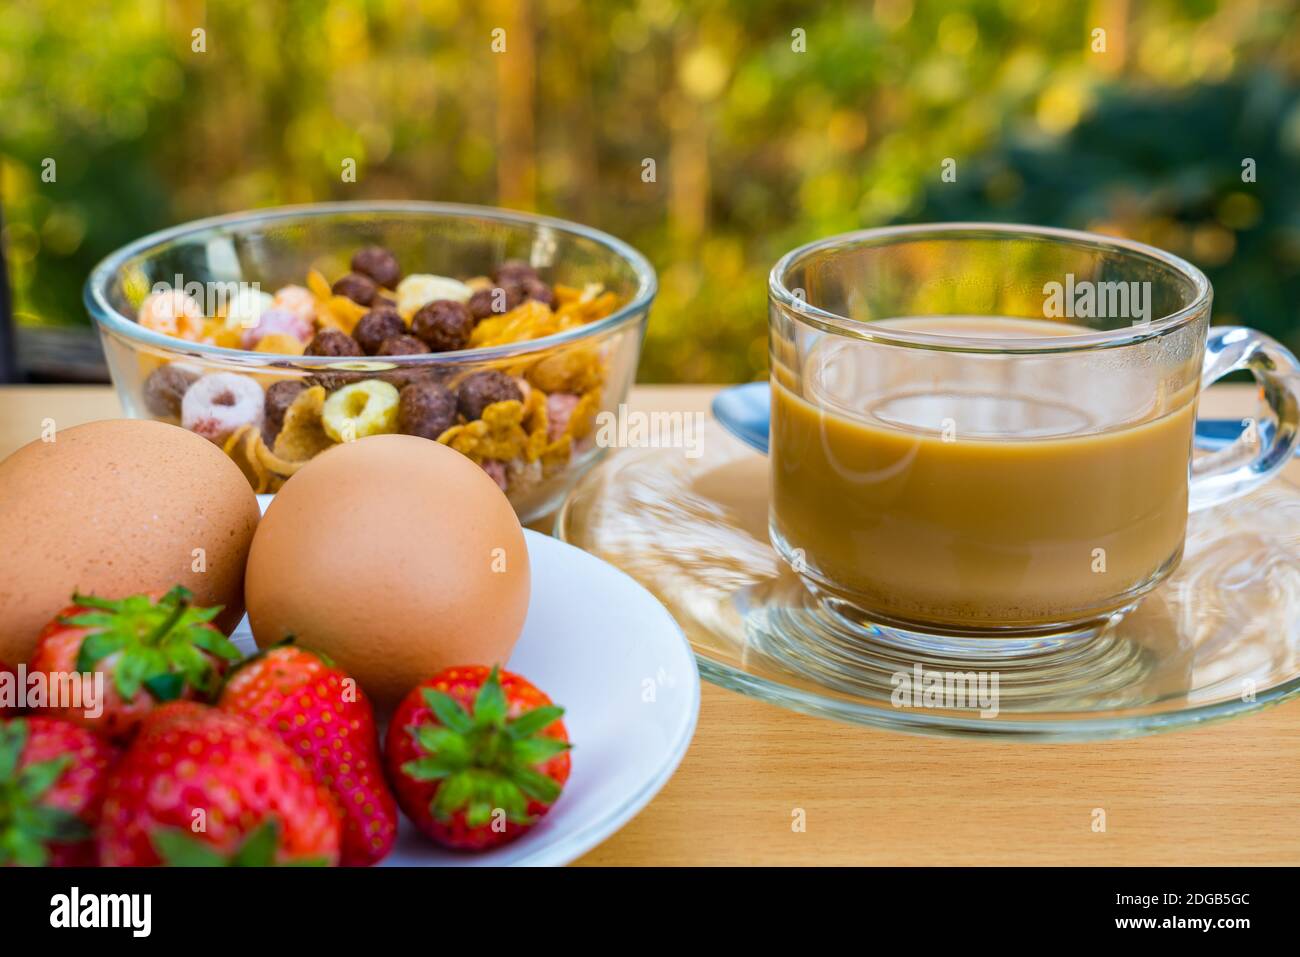 Café chaud, céréales, œufs à ébullition et fraise mûre Banque D'Images